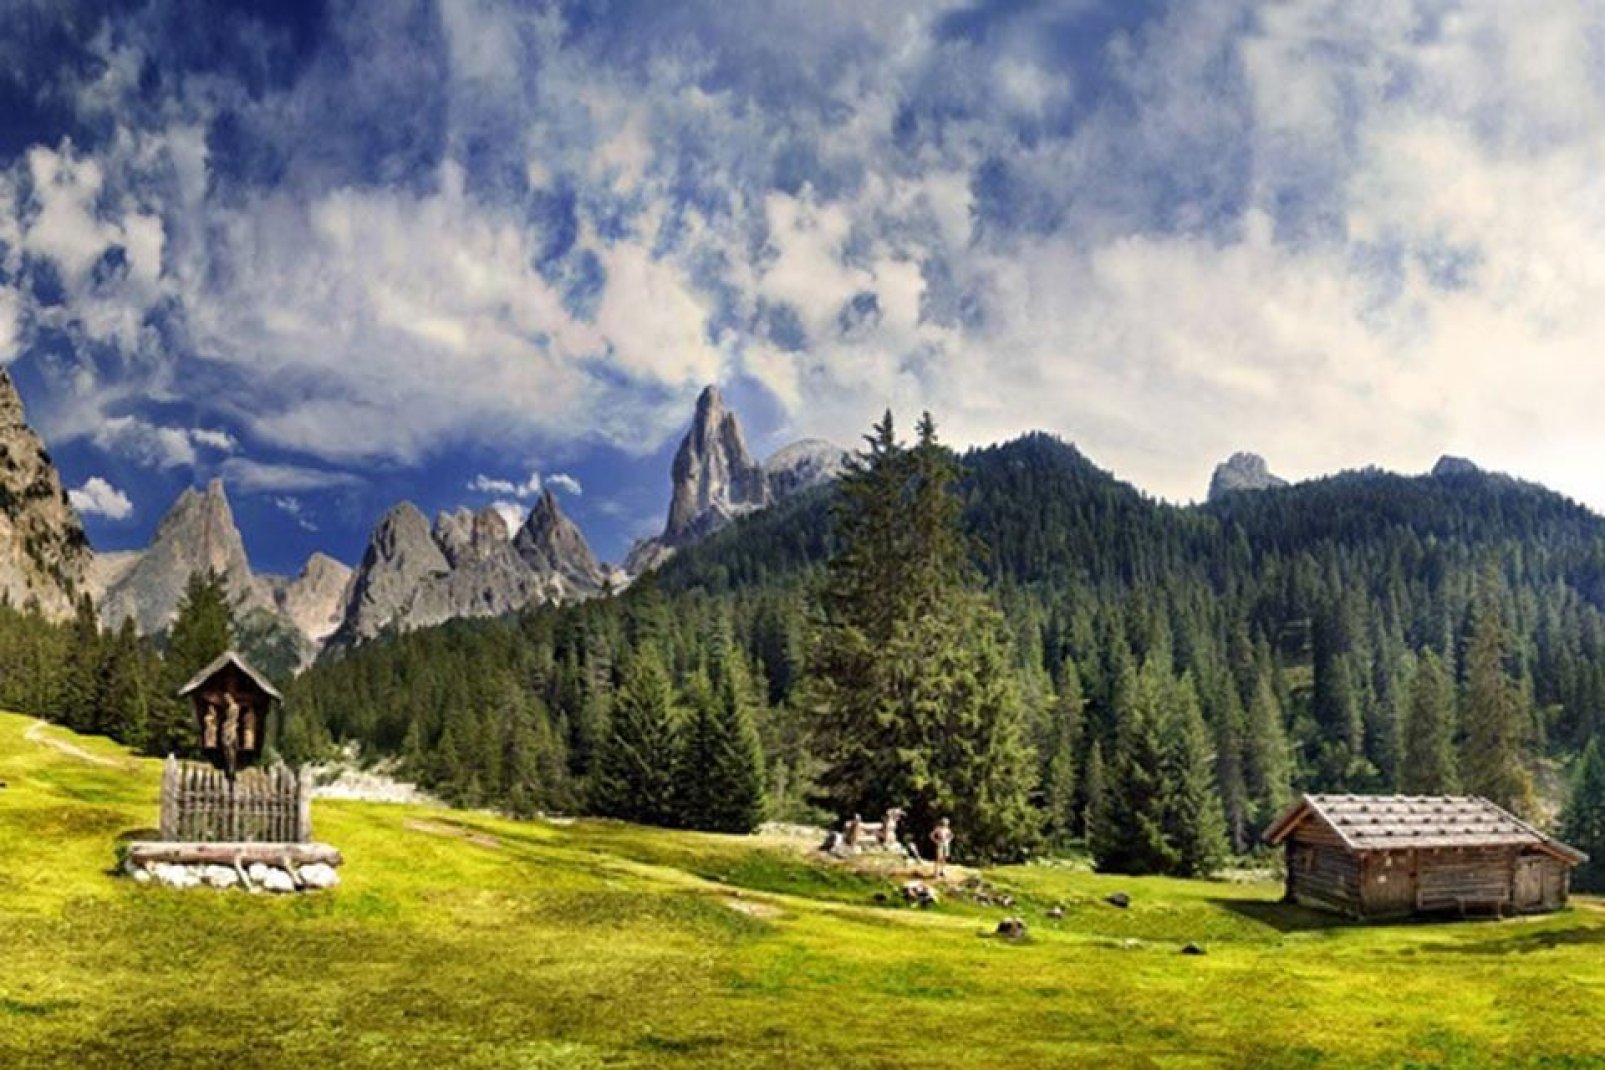 Die Dolomiten sind ein Gebirgsmassiv, das sich zwischen Belluno und Pordenone befindet und zum Weltnaturerbe der UNESCO erklärt wurde.